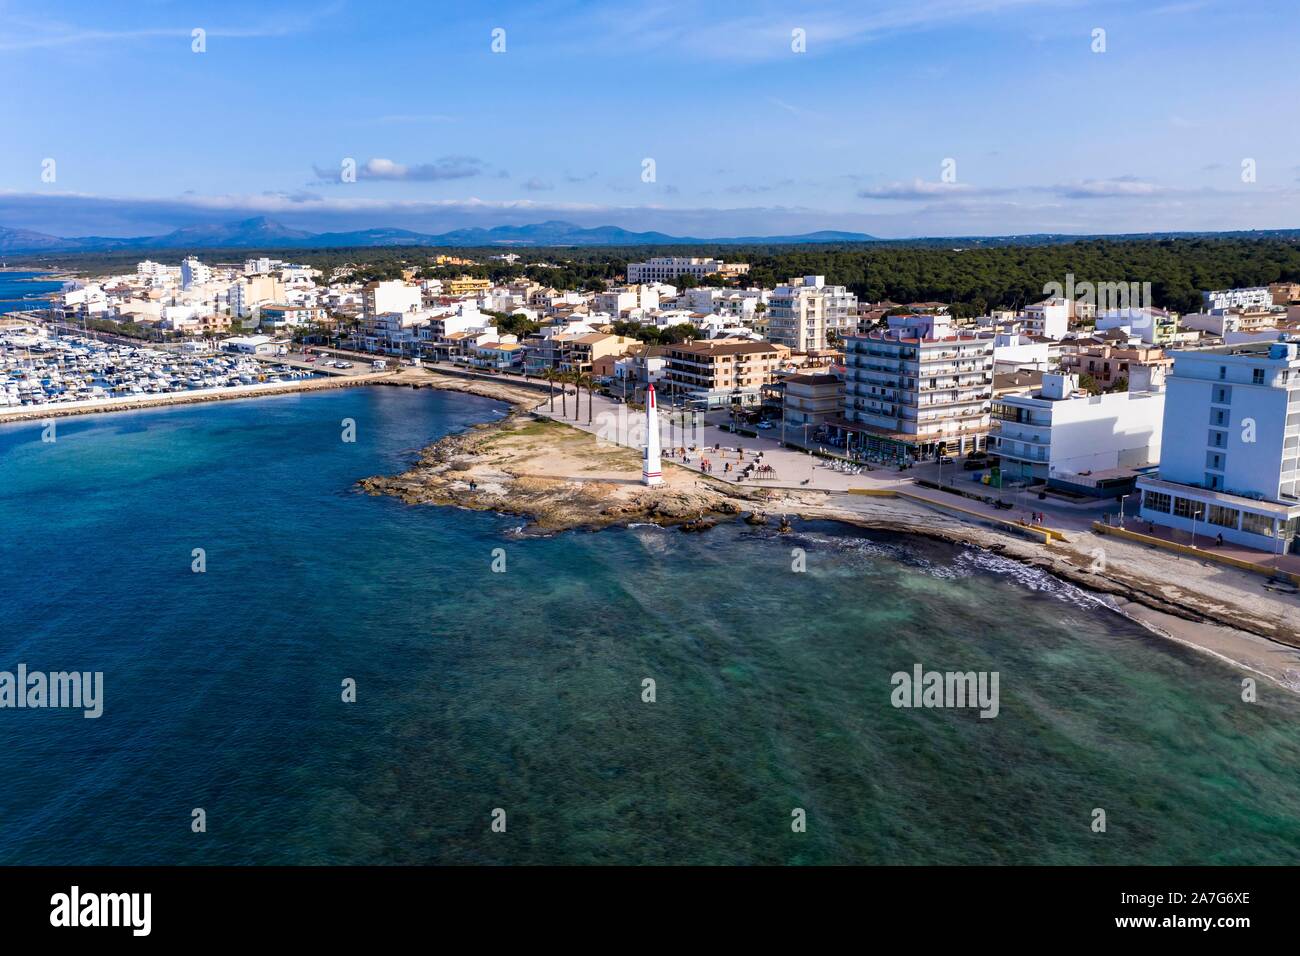 Vue aérienne, vue locale avec plage et Port, Can Picafort, Majorque, Îles Baléares, Espagne Banque D'Images